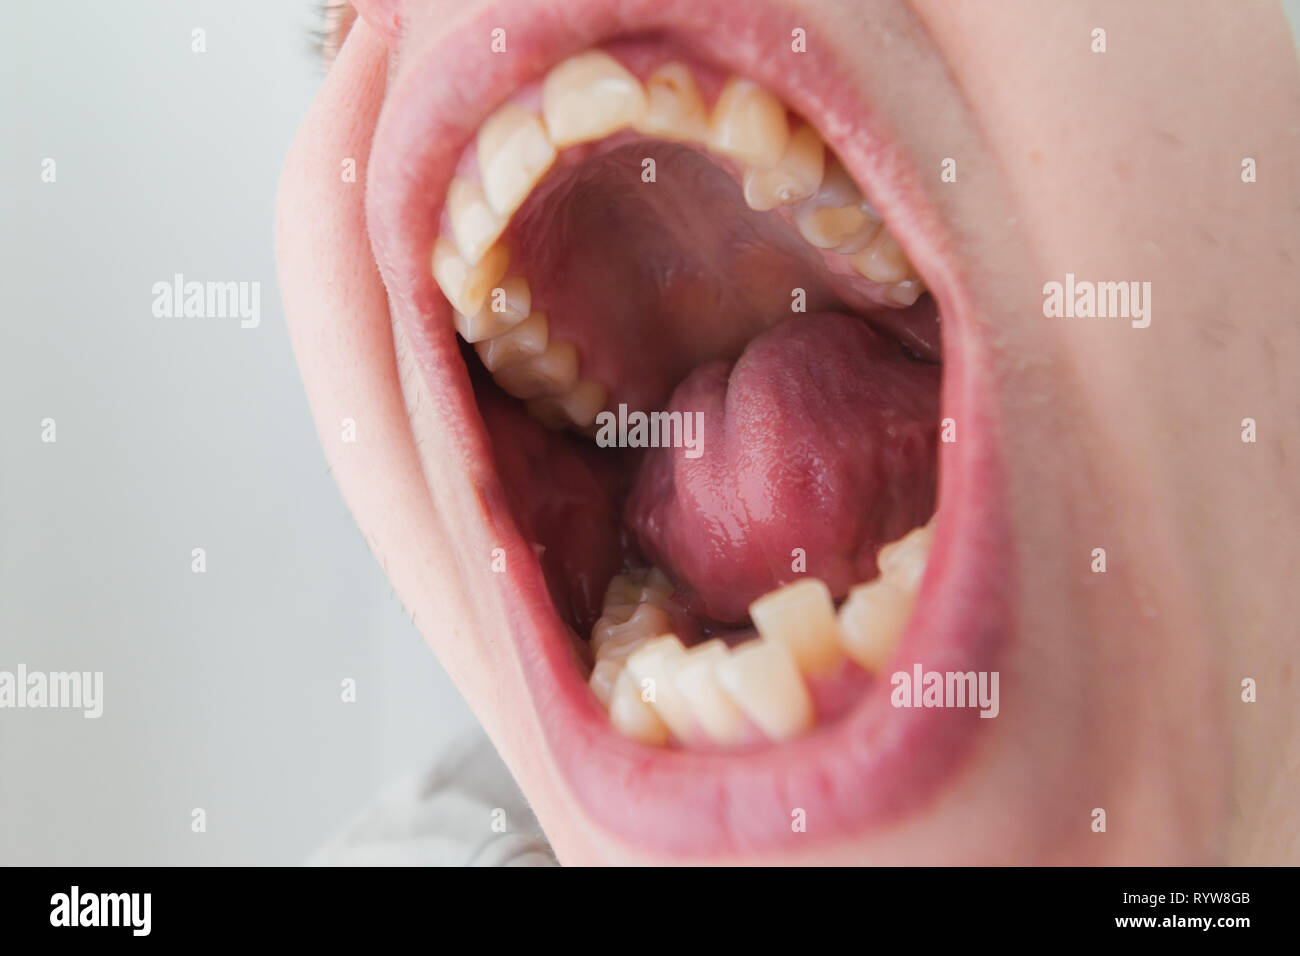 Européenne homme bouche ouverte, dents jaunes tordus lèvres sèches Banque D'Images